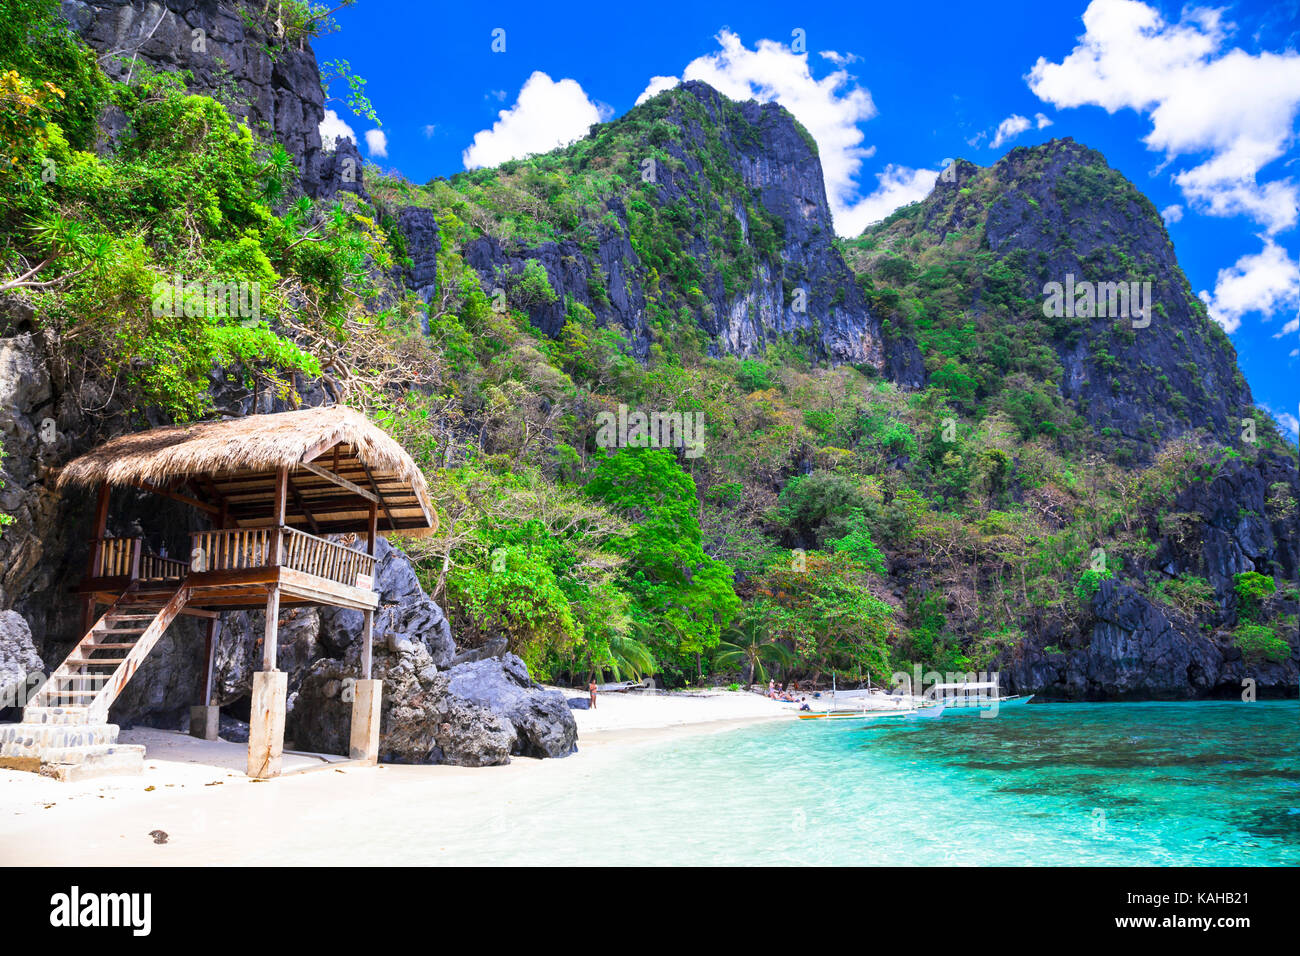 Unico di una natura incontaminata e paradiso tropicale el nido in plawan. FILIPPINE Foto Stock